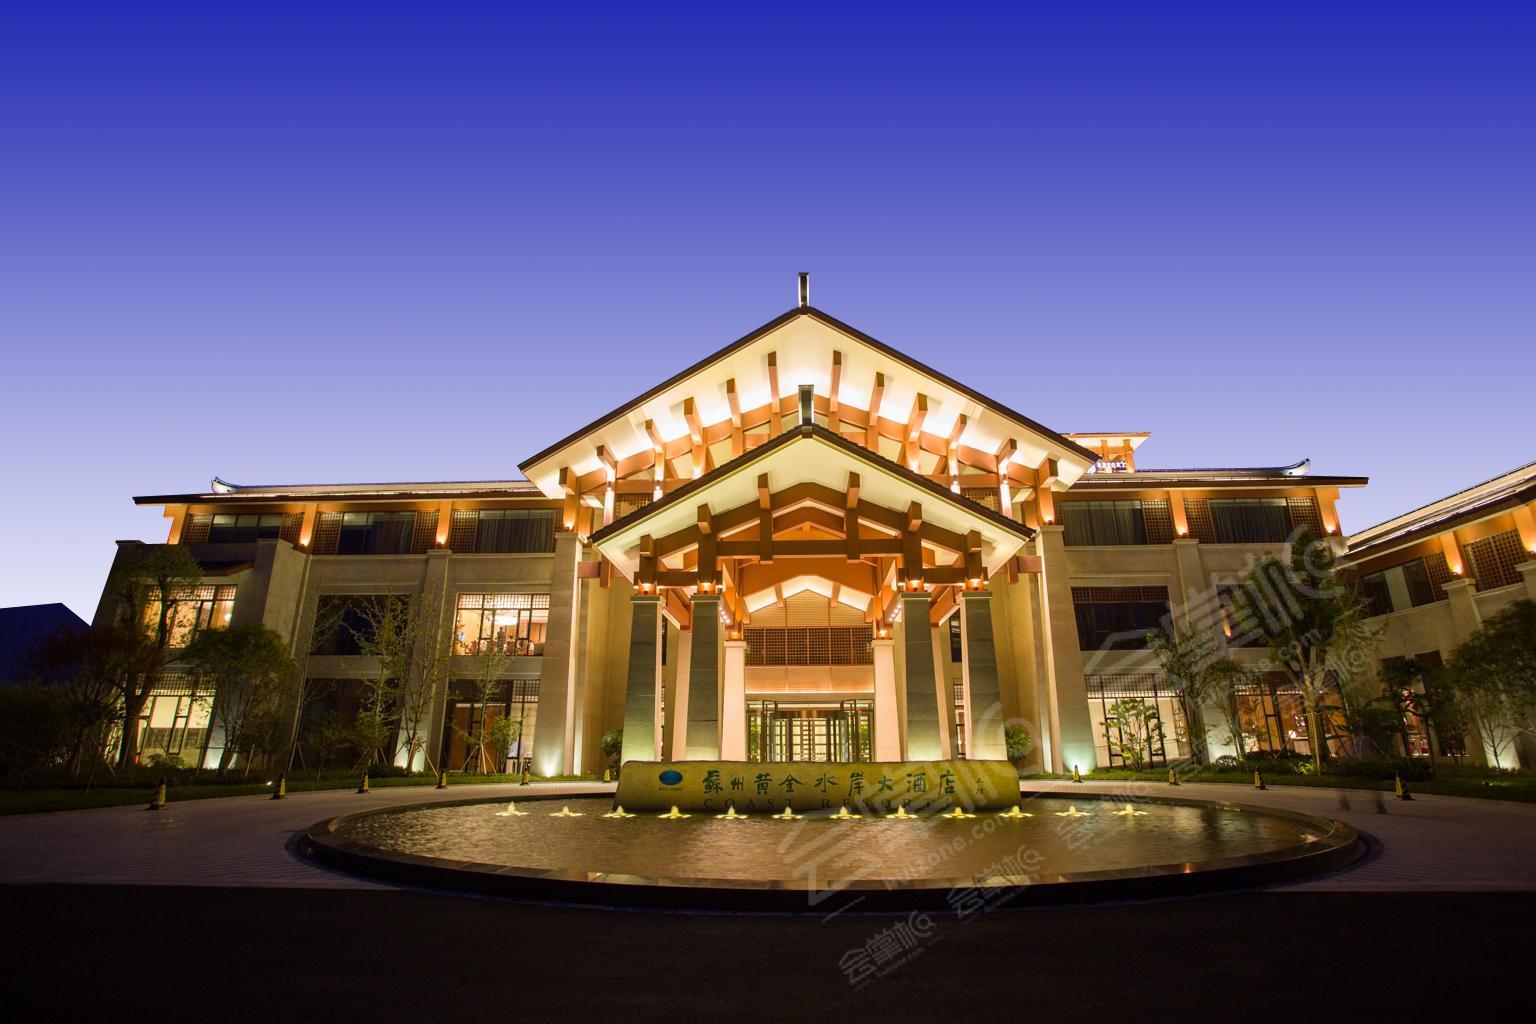 苏州五星级酒店最大容纳500人的会议场地|苏州黄金水岸大酒店的价格与联系方式